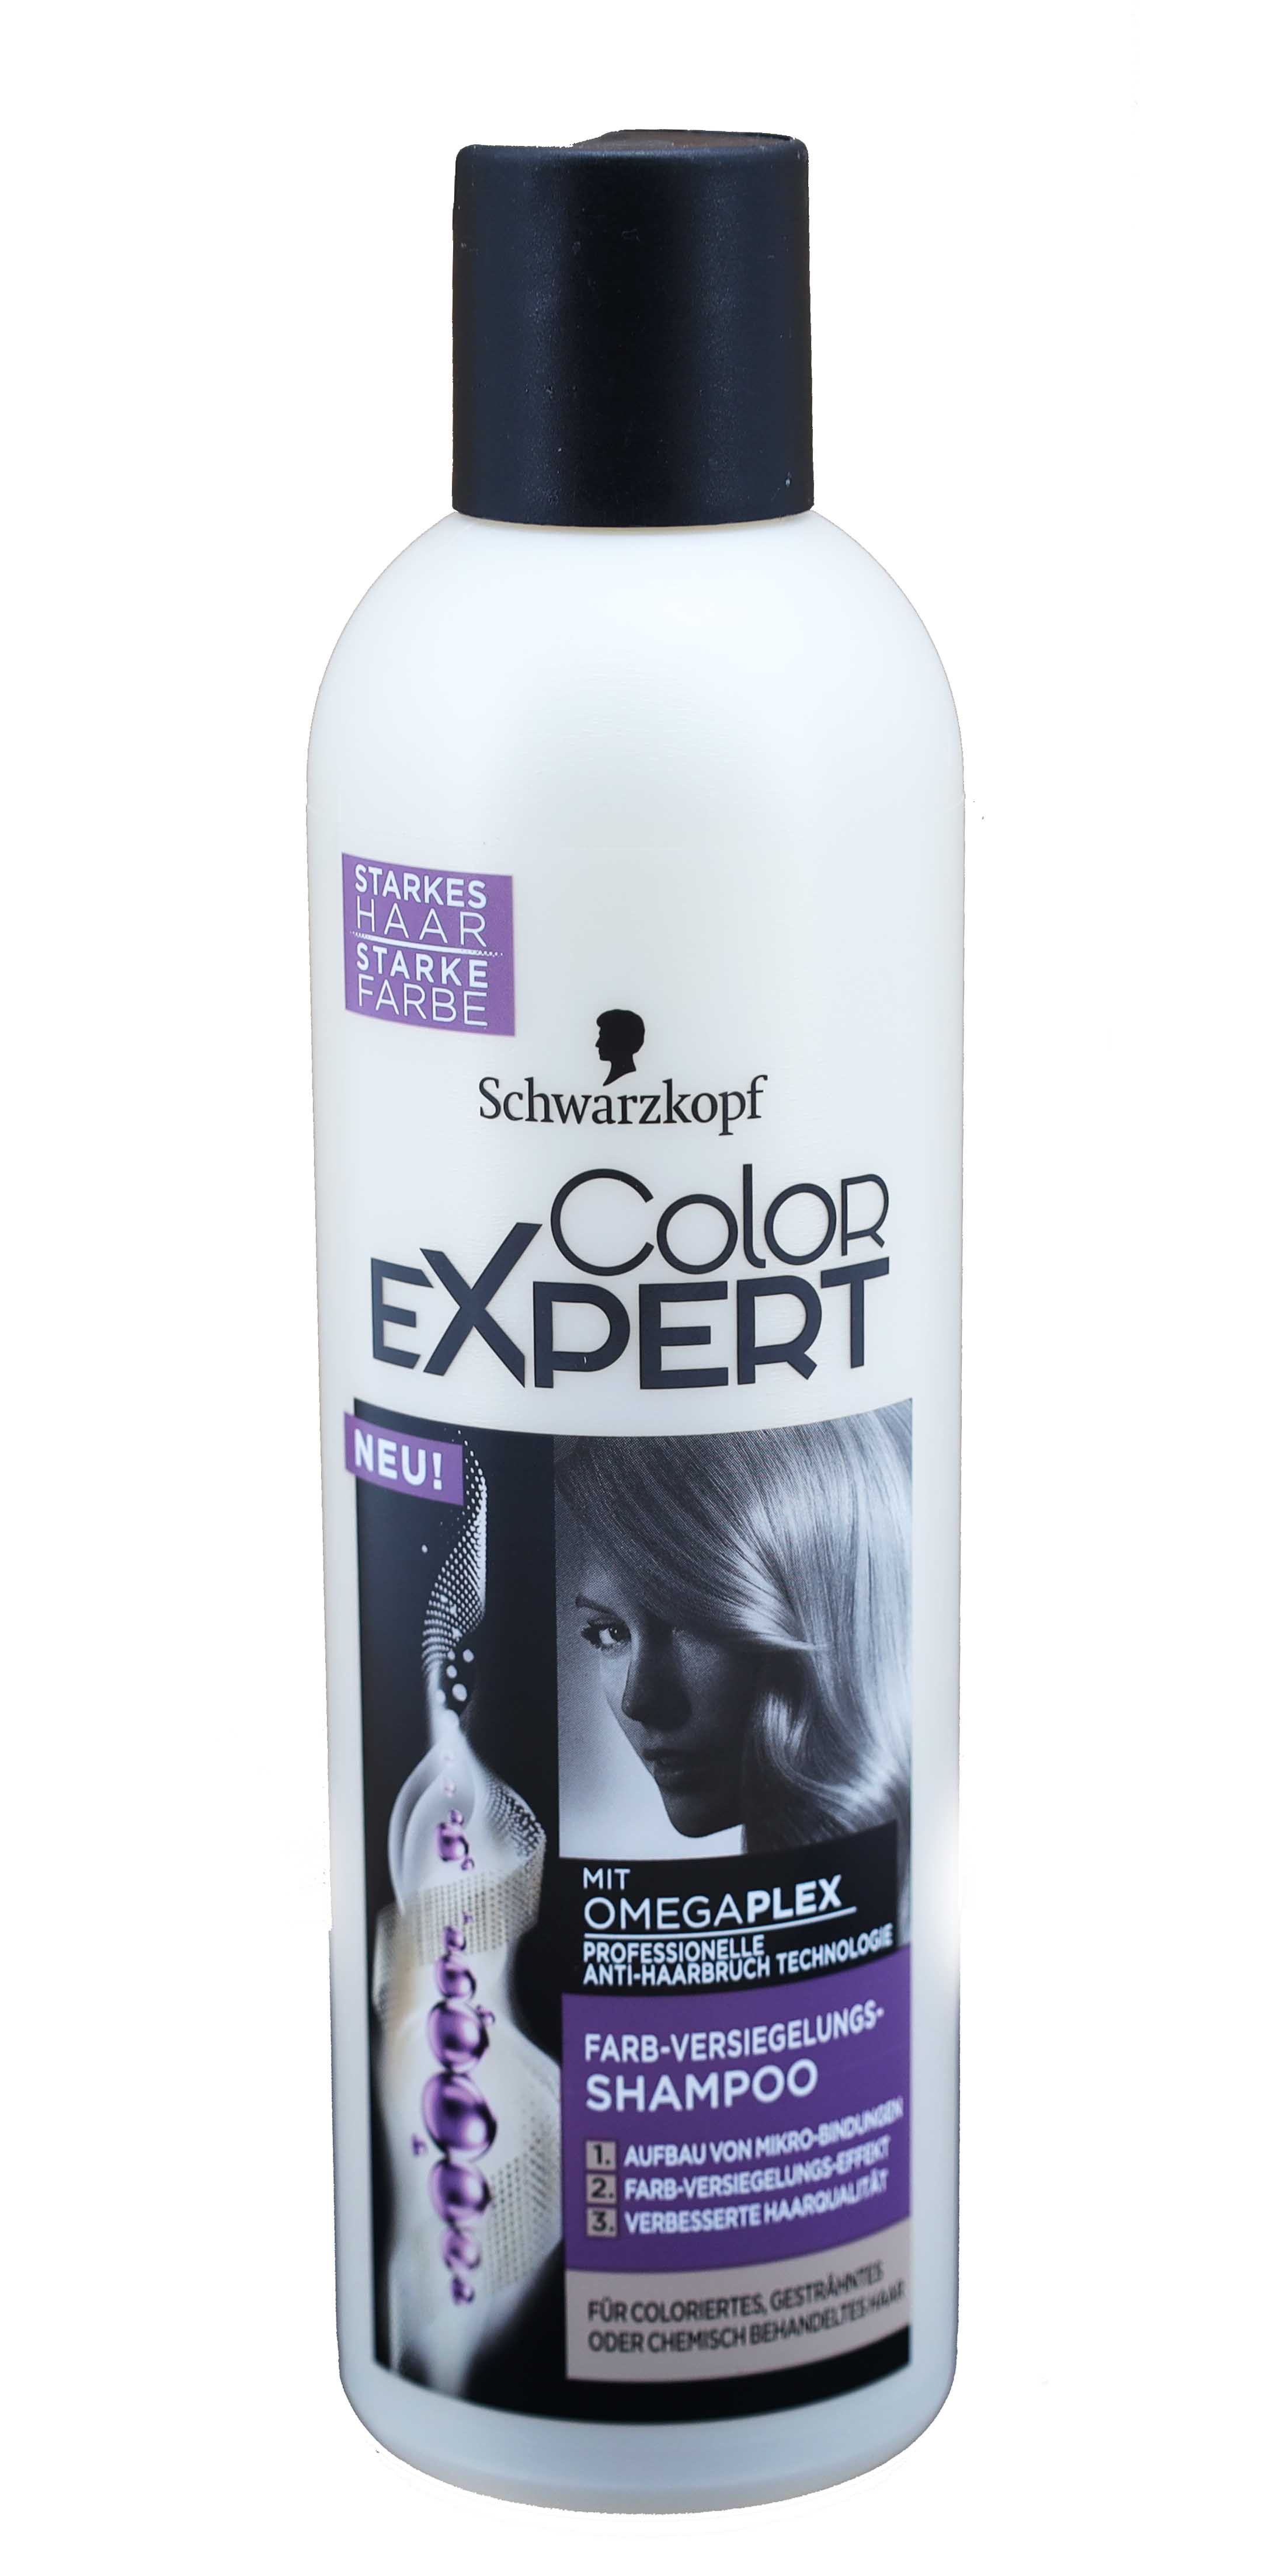 Schwarzkopf Color Expert Farb-Versiegelung-Shampoo 250ml